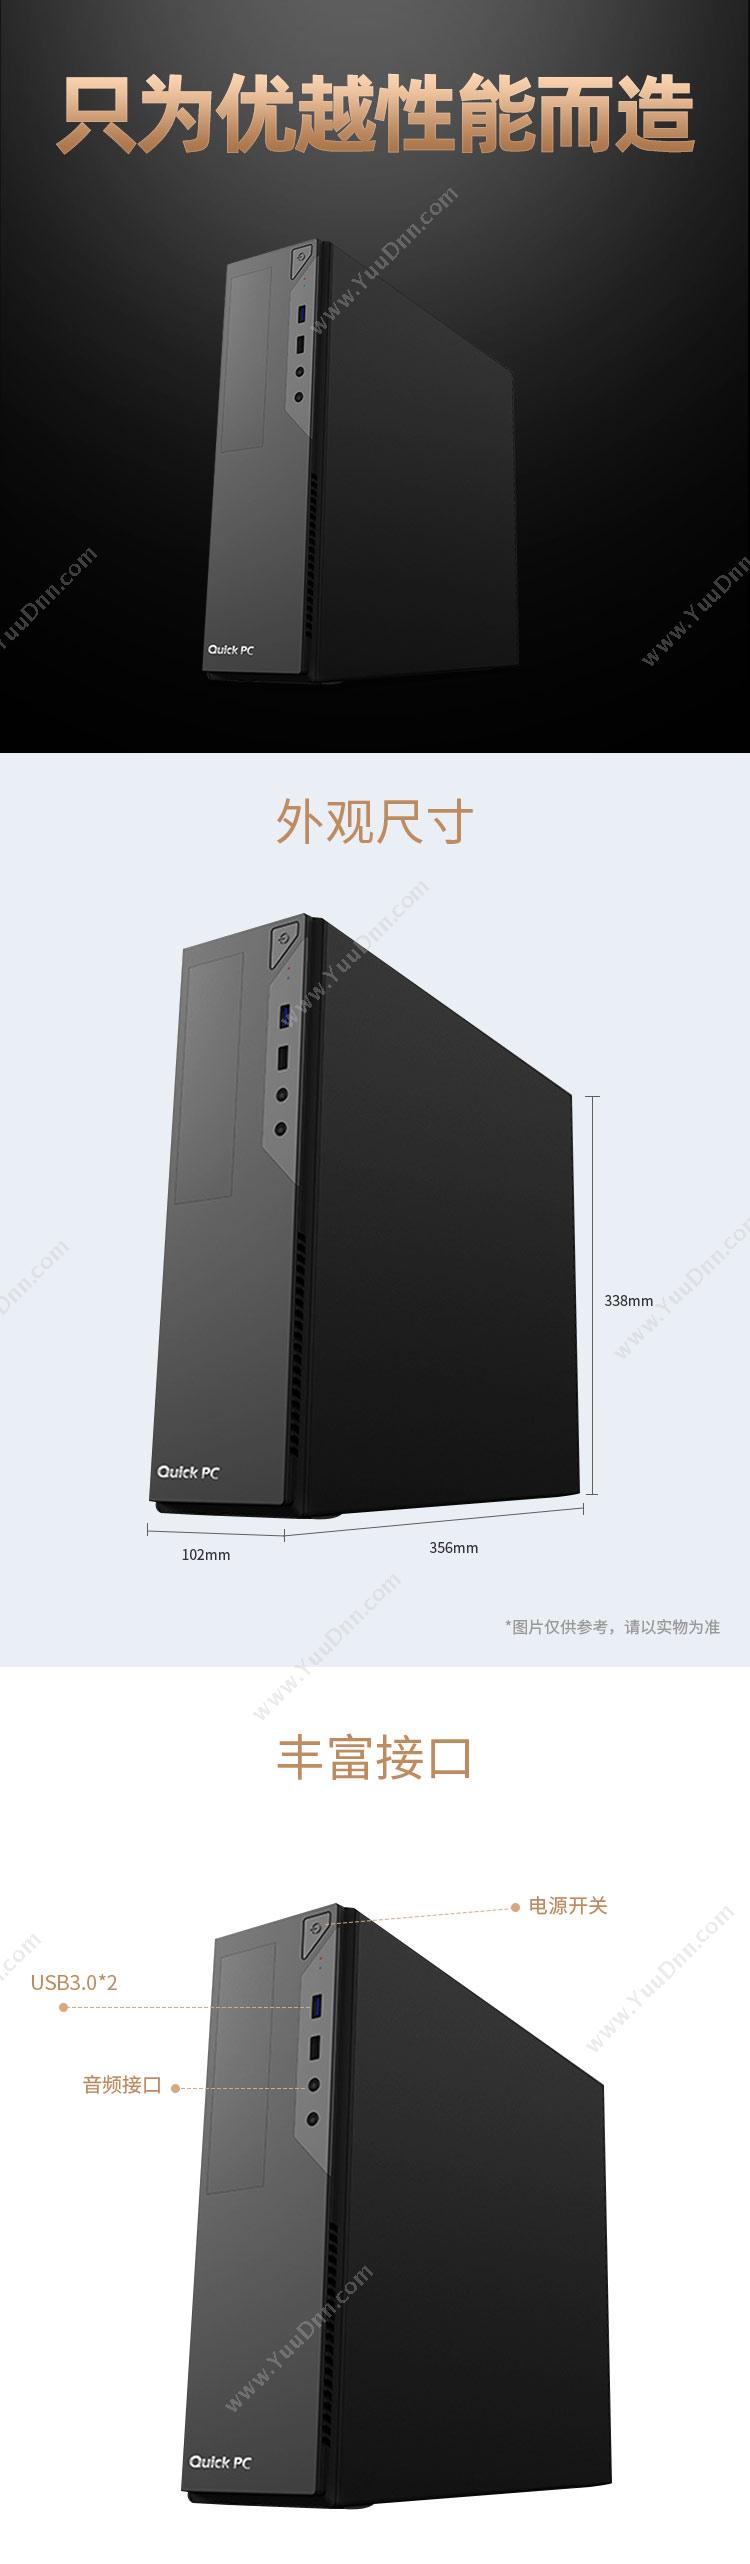 物公基租赁 E36升级版 单主机(i5-8400/8G/240G SSD+1T HDD/核显/USB无线网卡/Linux) 电脑主机